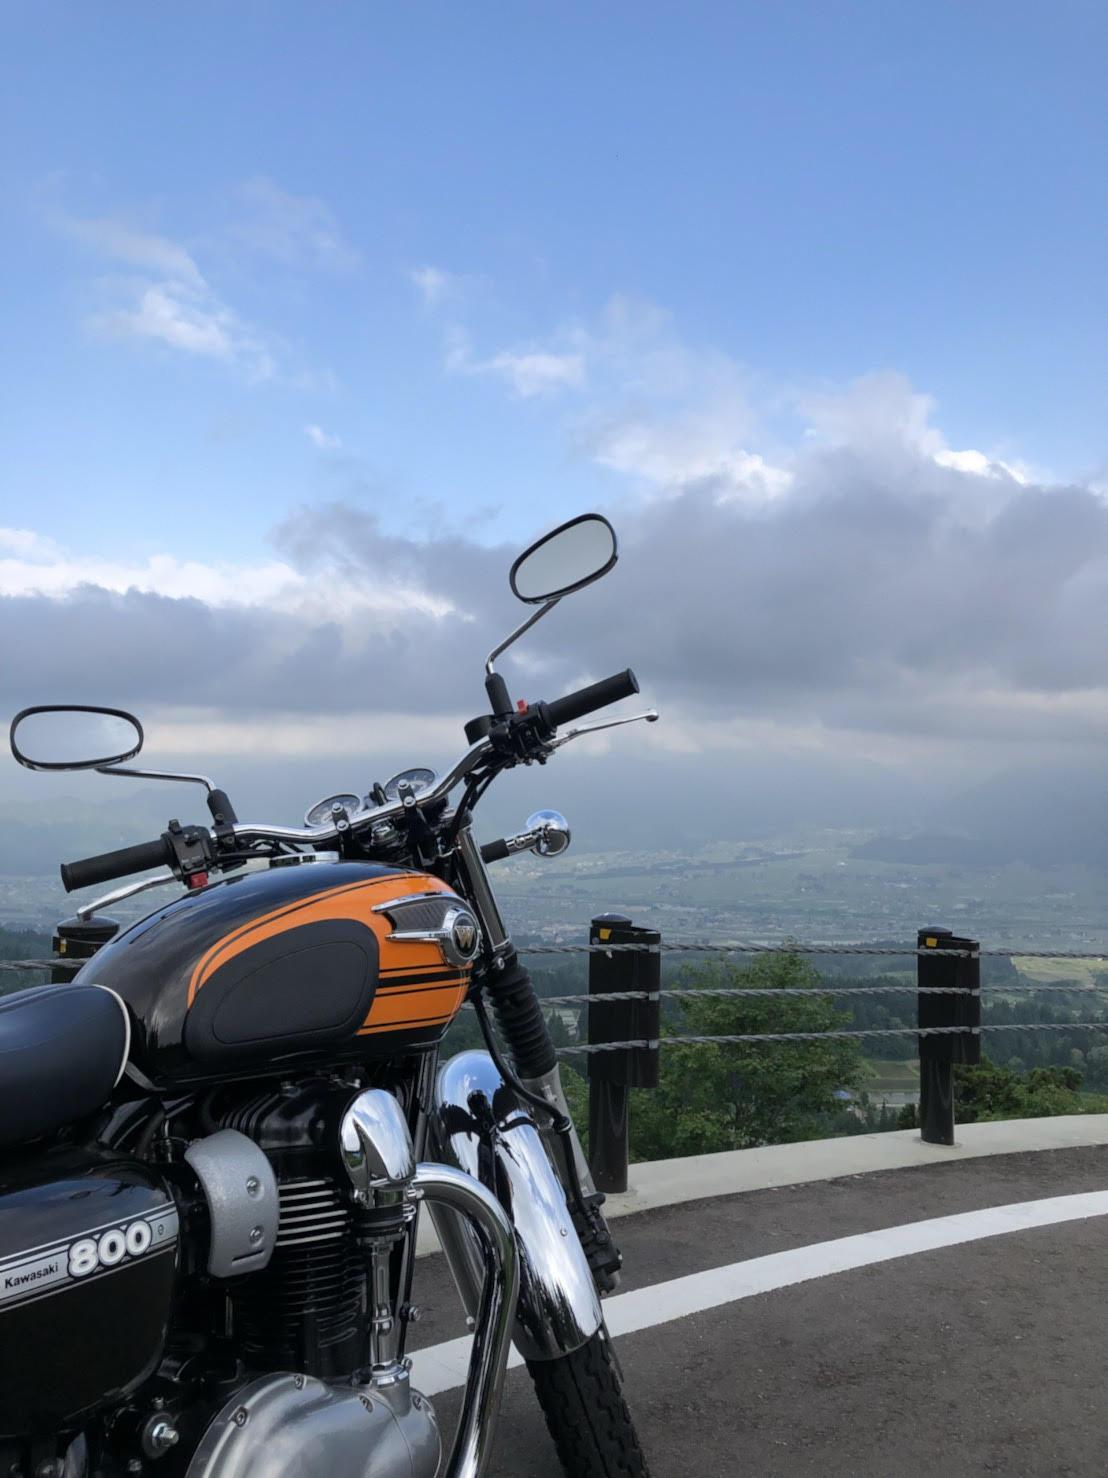 緩やかなカーブを描く車道に止められた大型2輪バイク。バイク越しに見える、高台からの緑の多い町の風景と、大きな雲が浮かぶ青空の写真